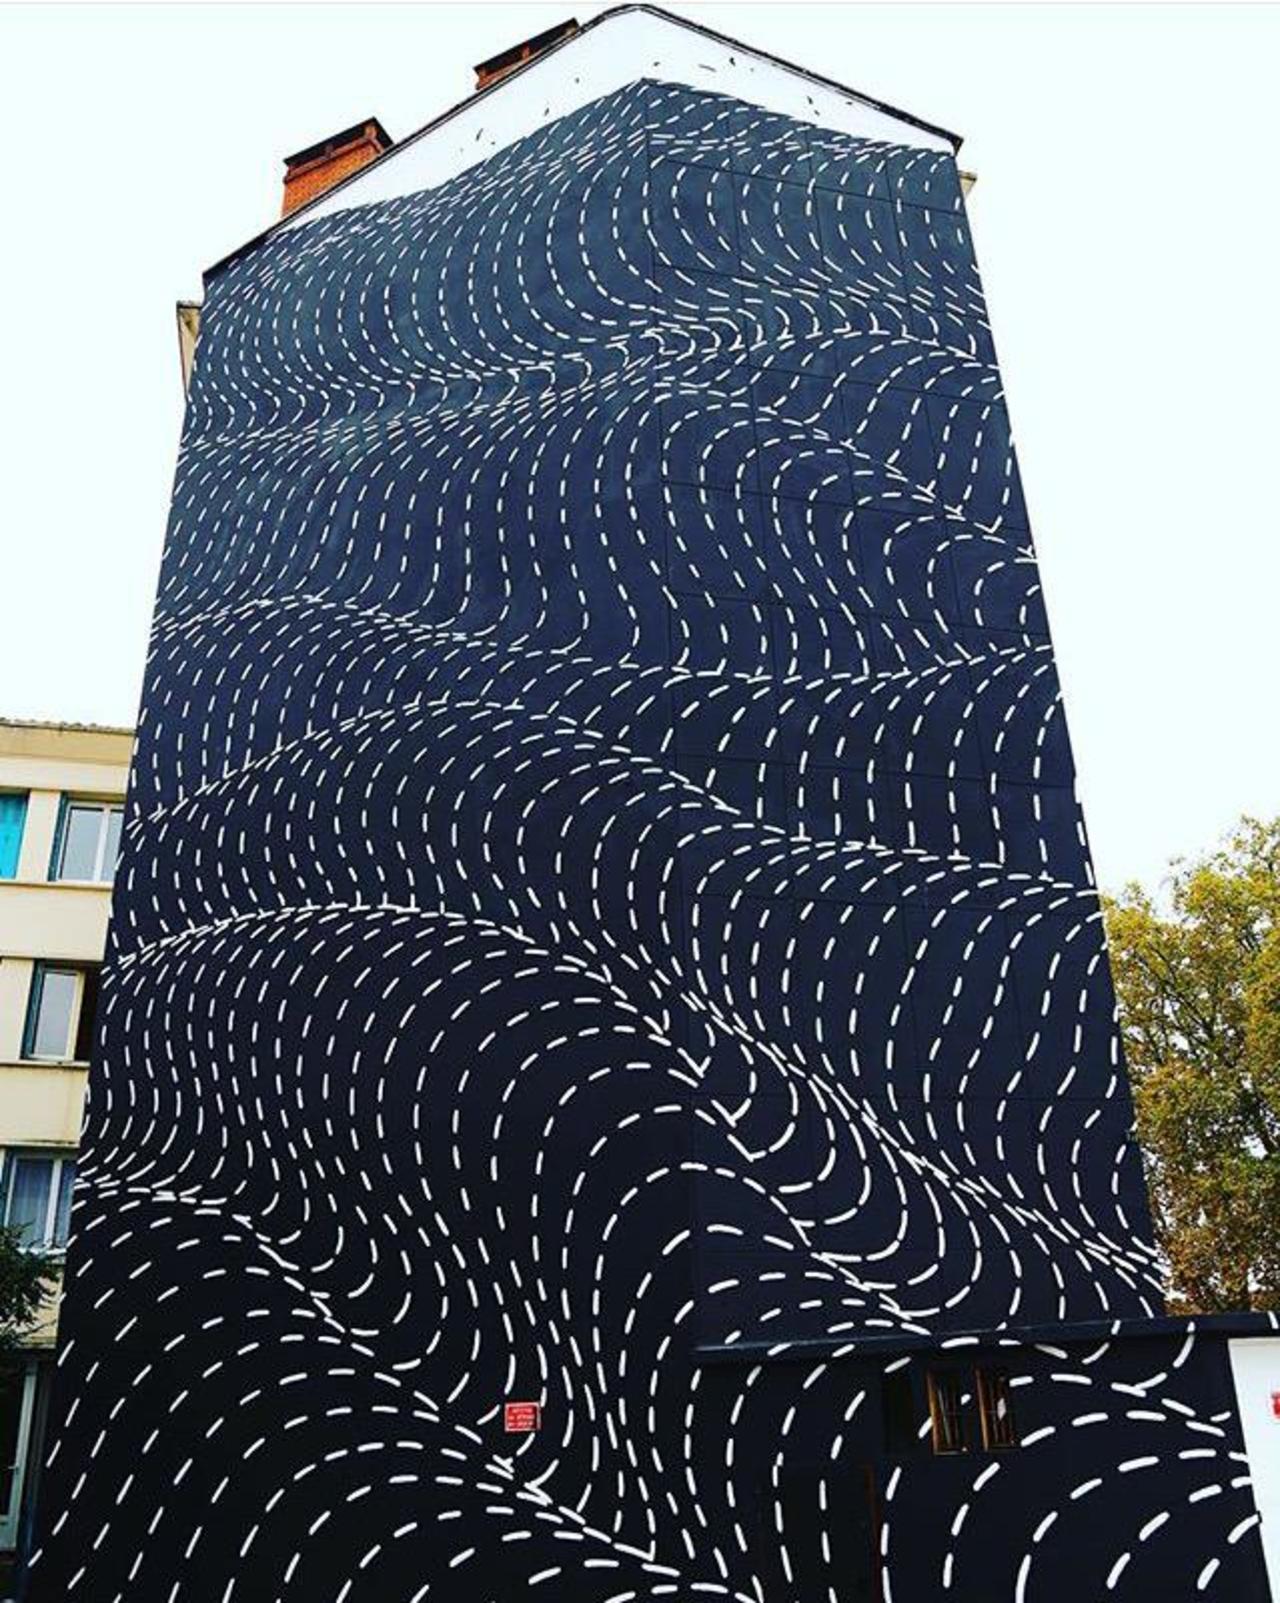 New Street Art by Brendan Monroe's for WOPS ! Festival in Toulouse, France. 

#art #graffiti #mural #streetart https://t.co/qkjbxkSuBt